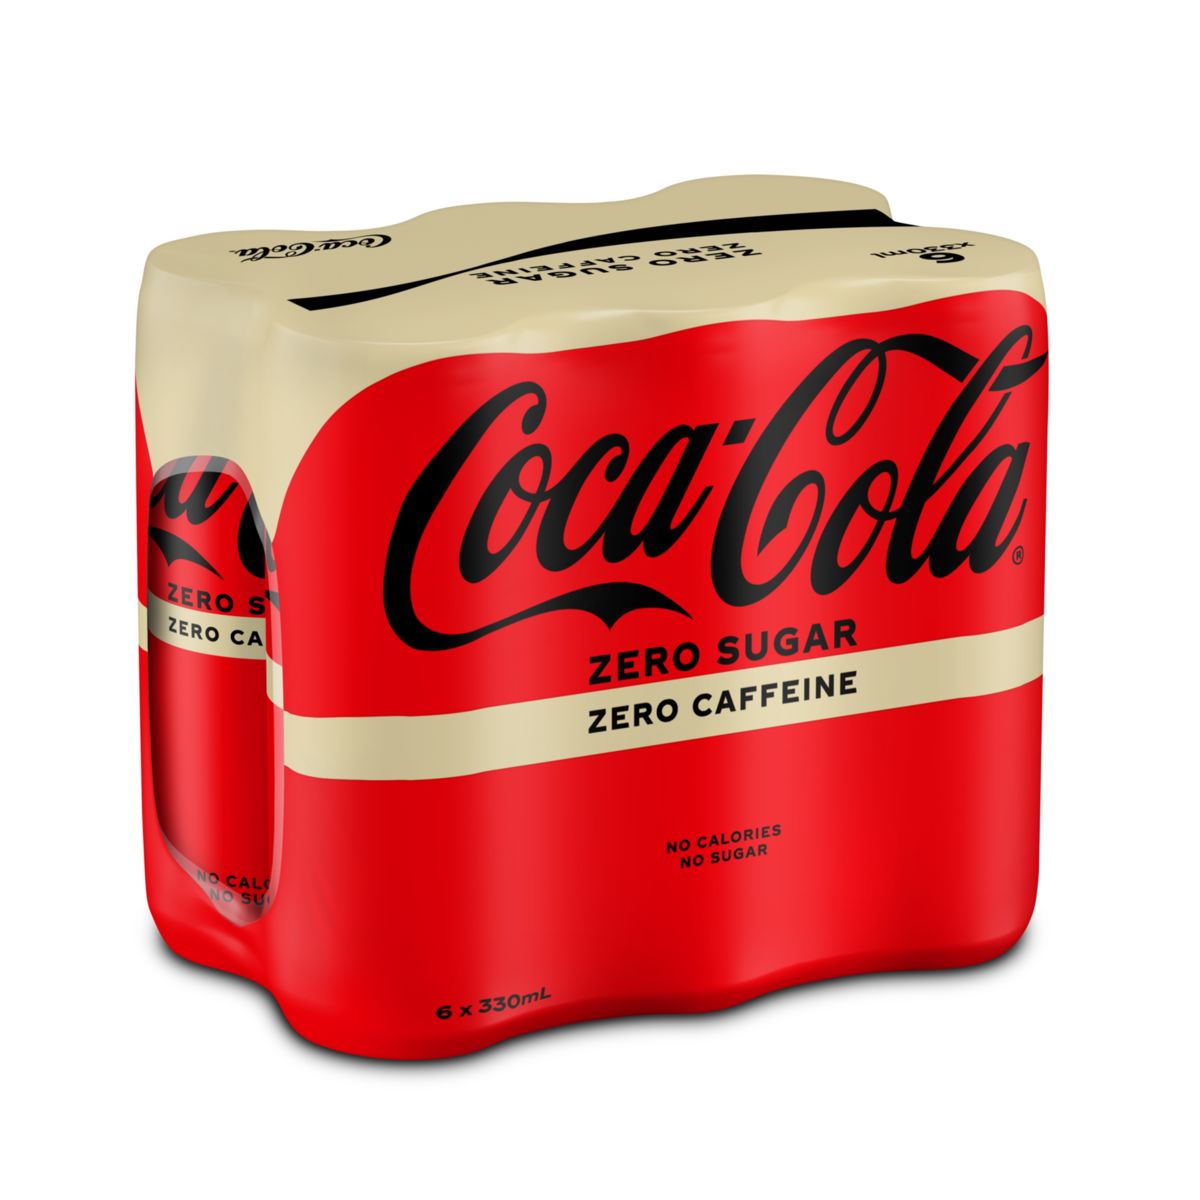 Coca-Cola Zero No Caffeine Coke Soft drink Canette 6 x 330 ml